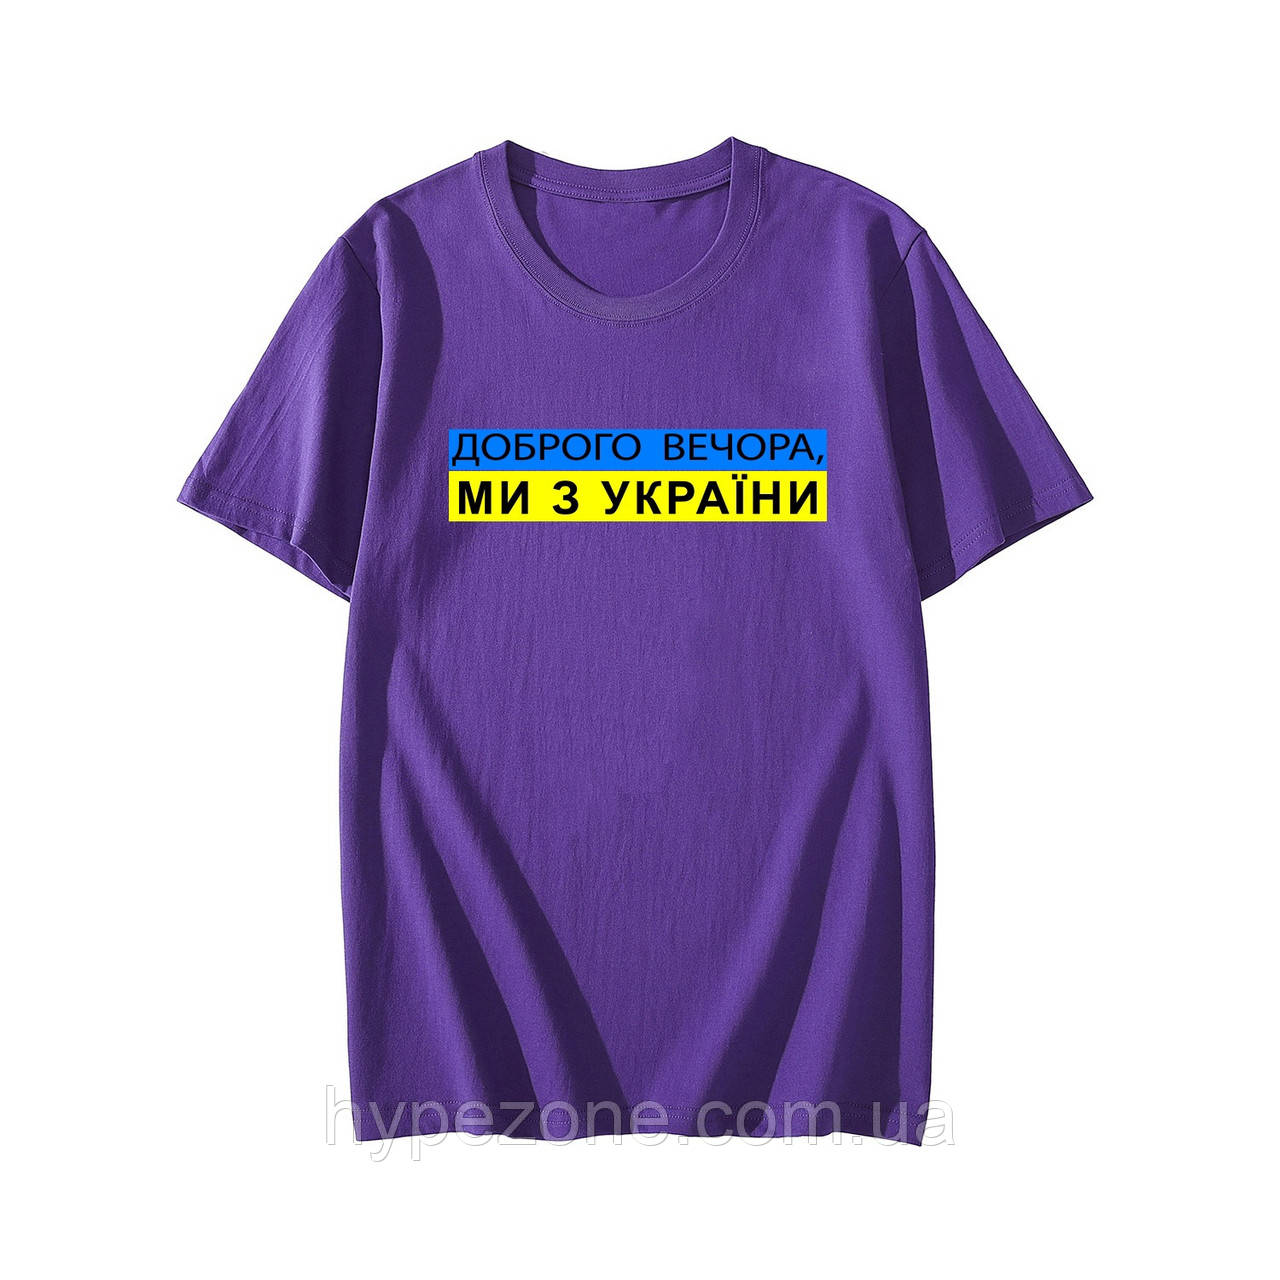 Патріотична футболка чоловіча з написом Доброго Вечора, Ми з України, одяг з національною символікою України